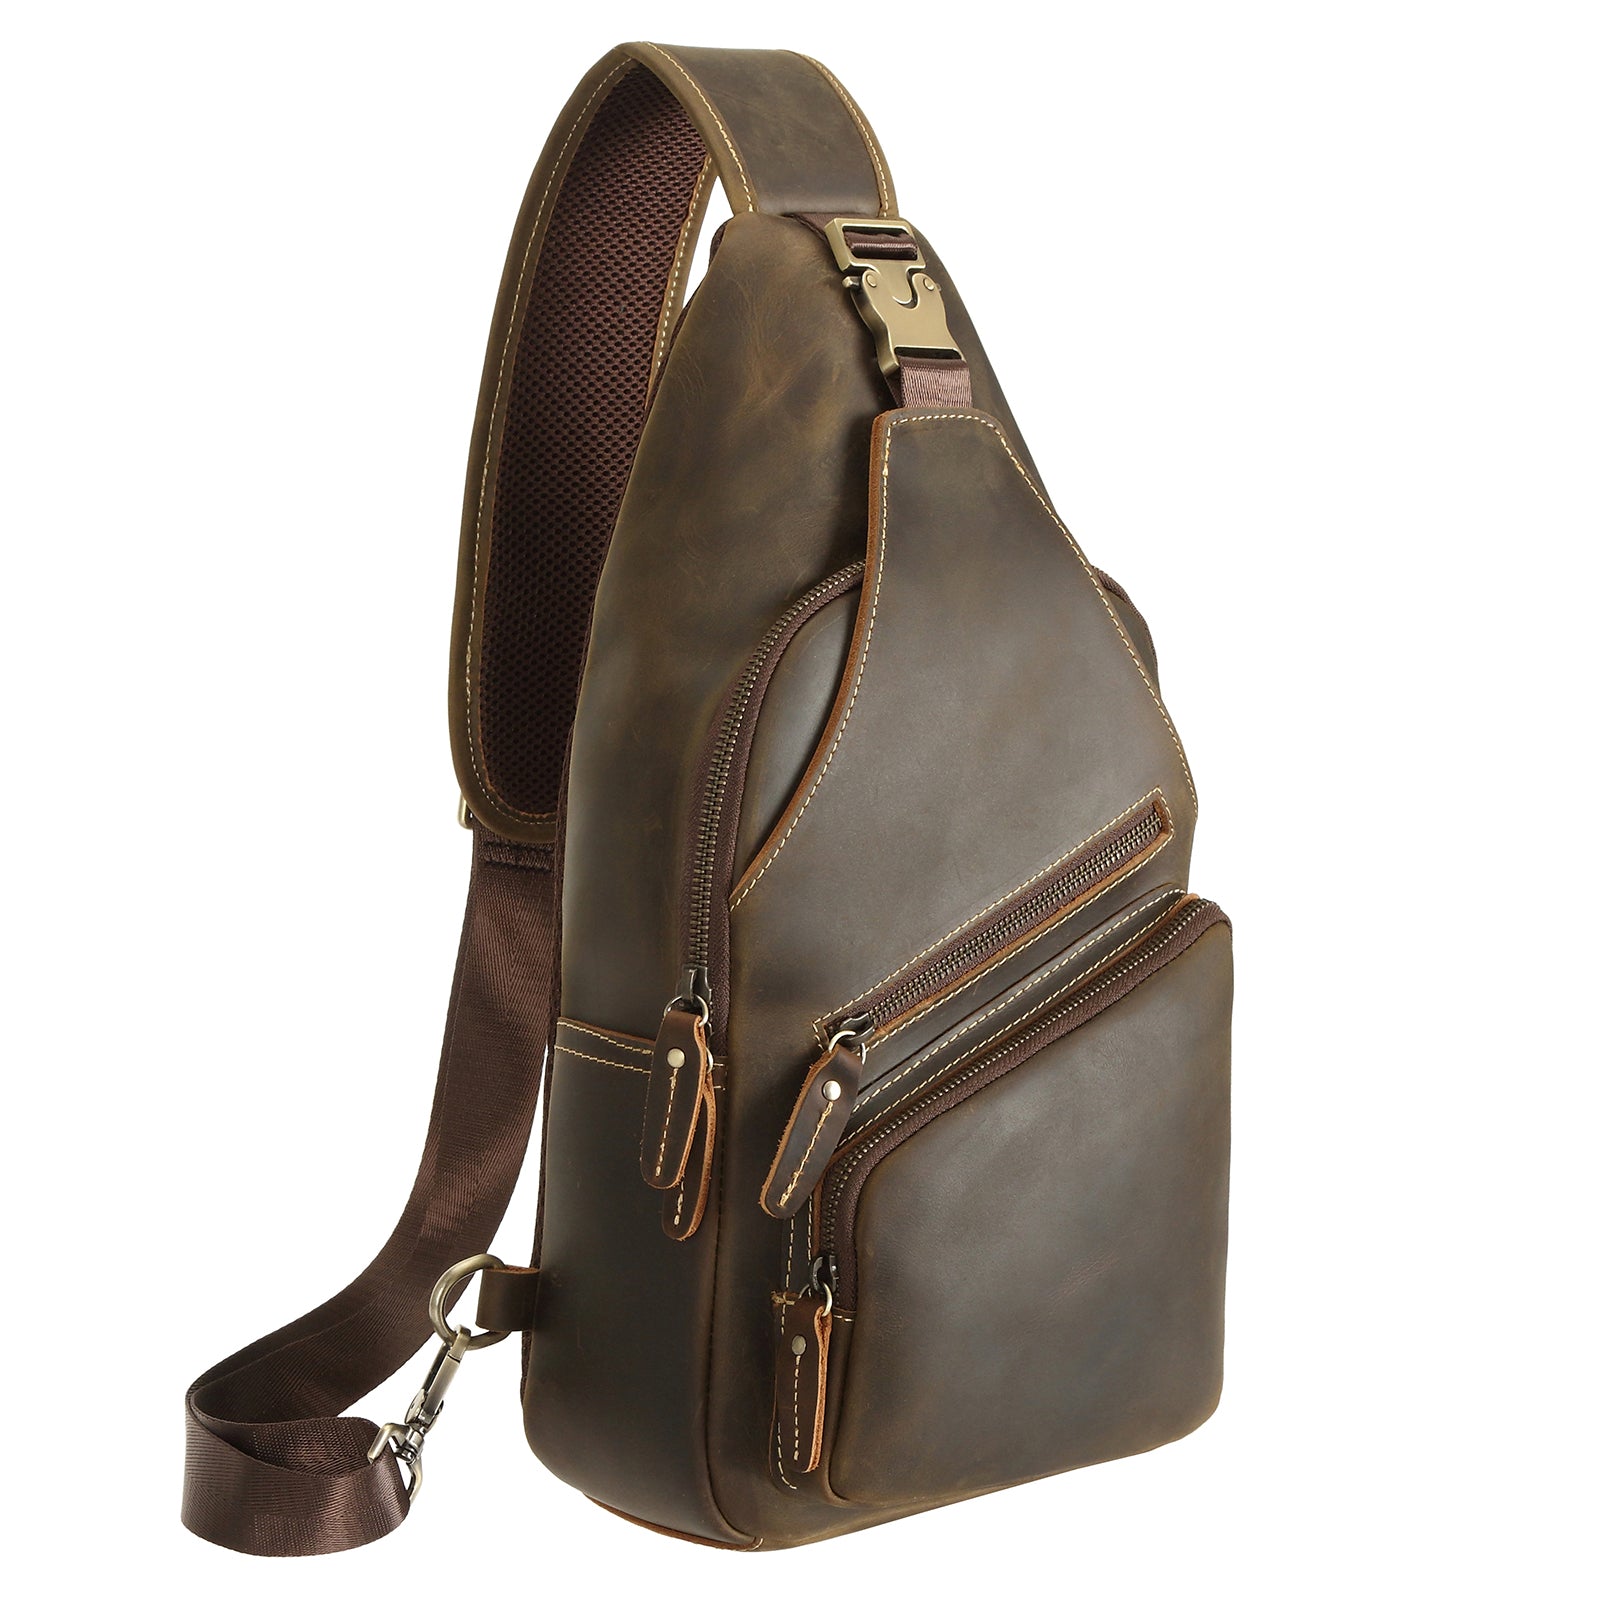 Crazy Horse Leather Sling Bag Vintage Leather Chest Bag Mens Crossbody Bag